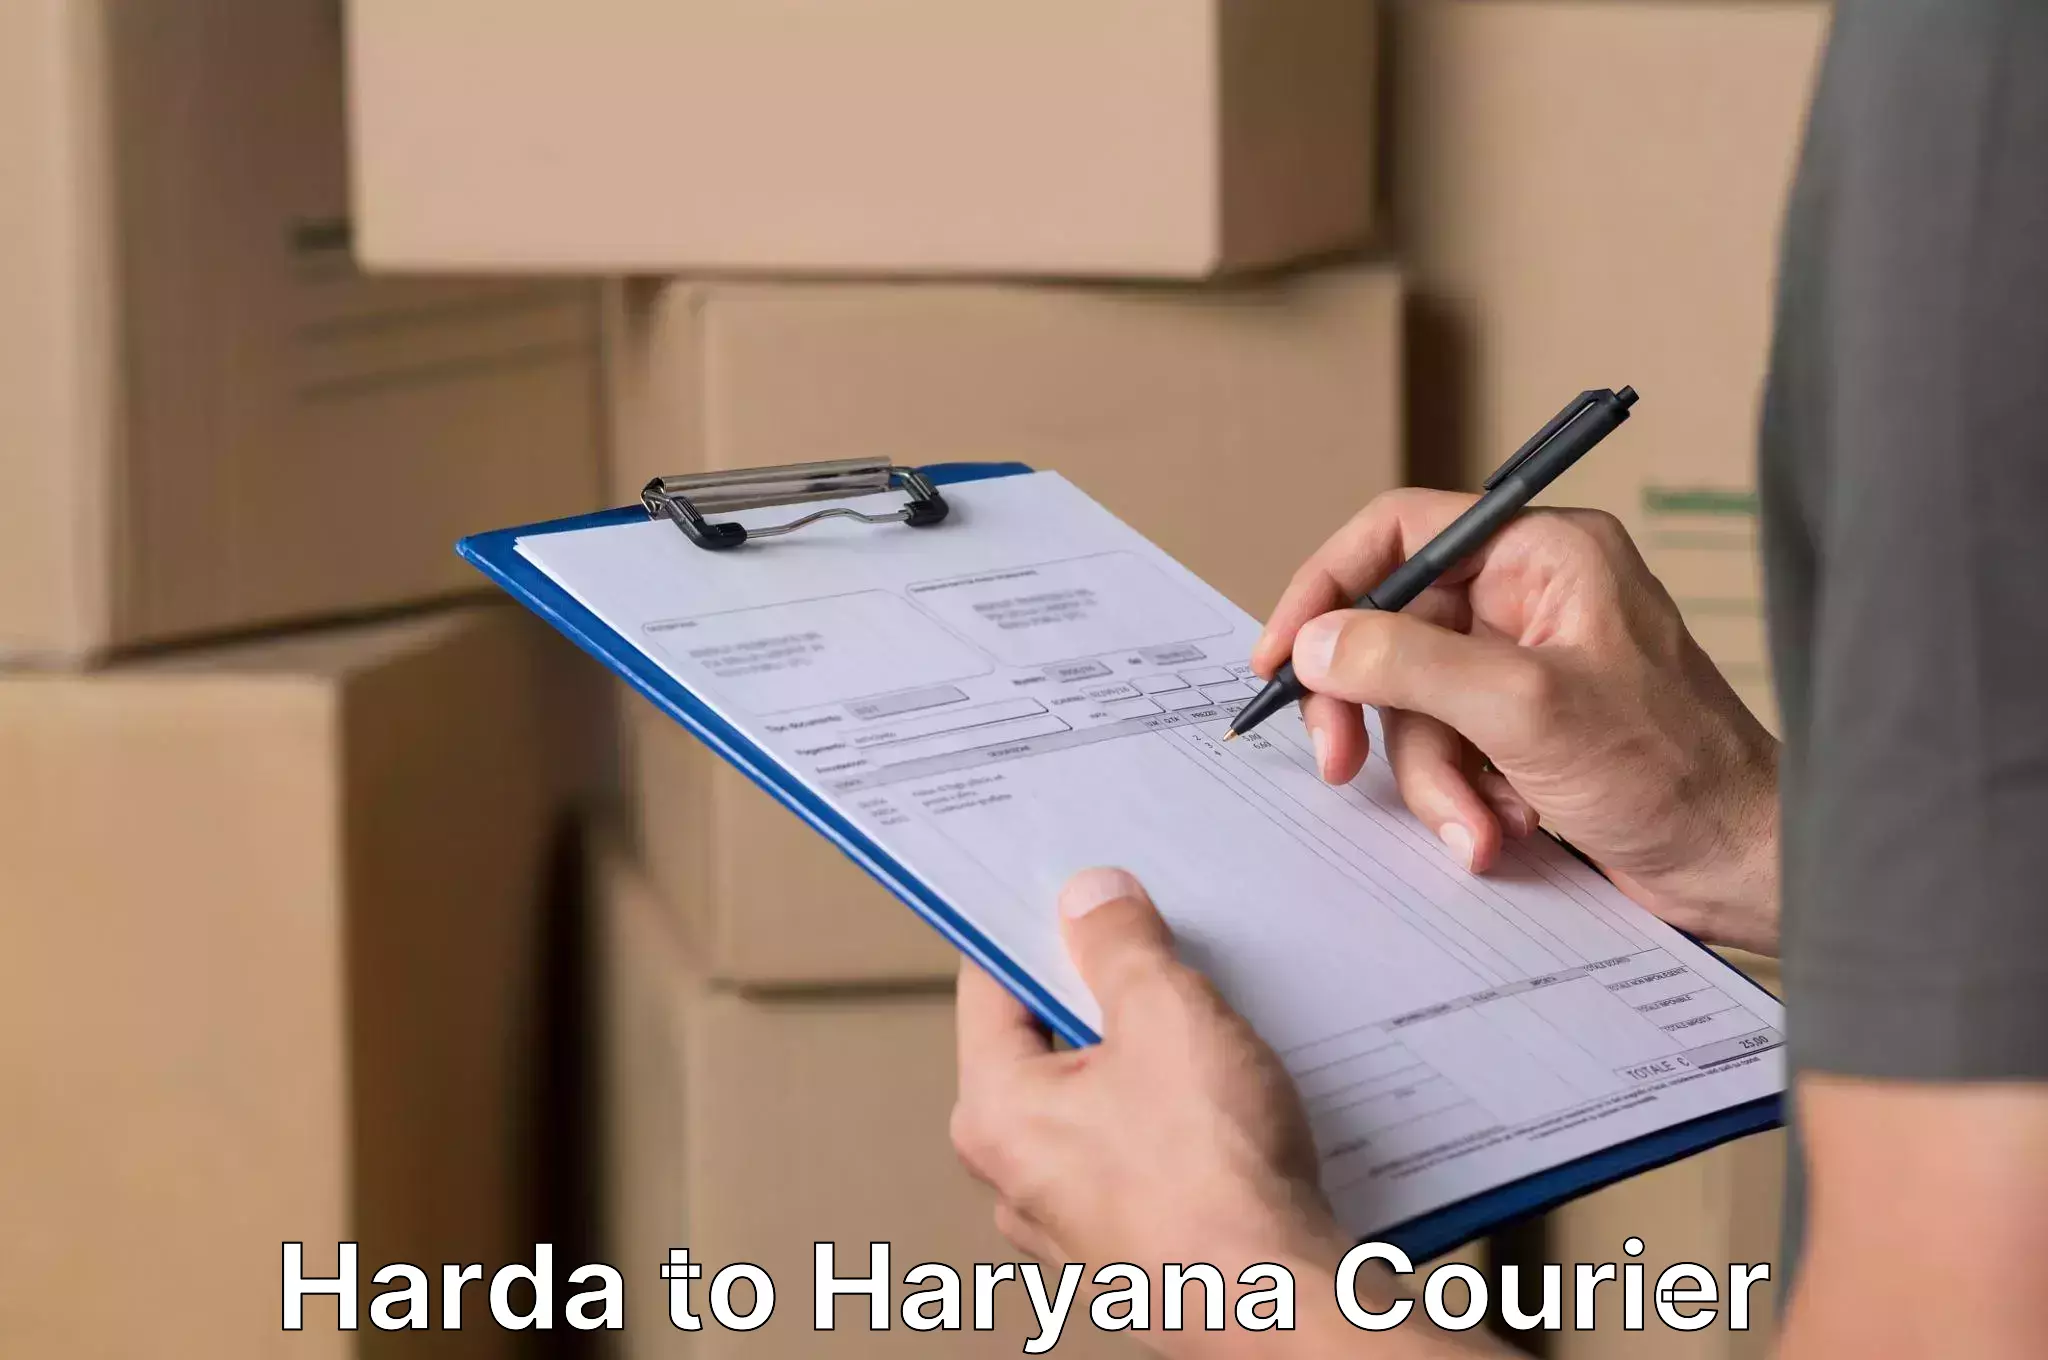 Furniture moving and handling Harda to Chaudhary Charan Singh Haryana Agricultural University Hisar